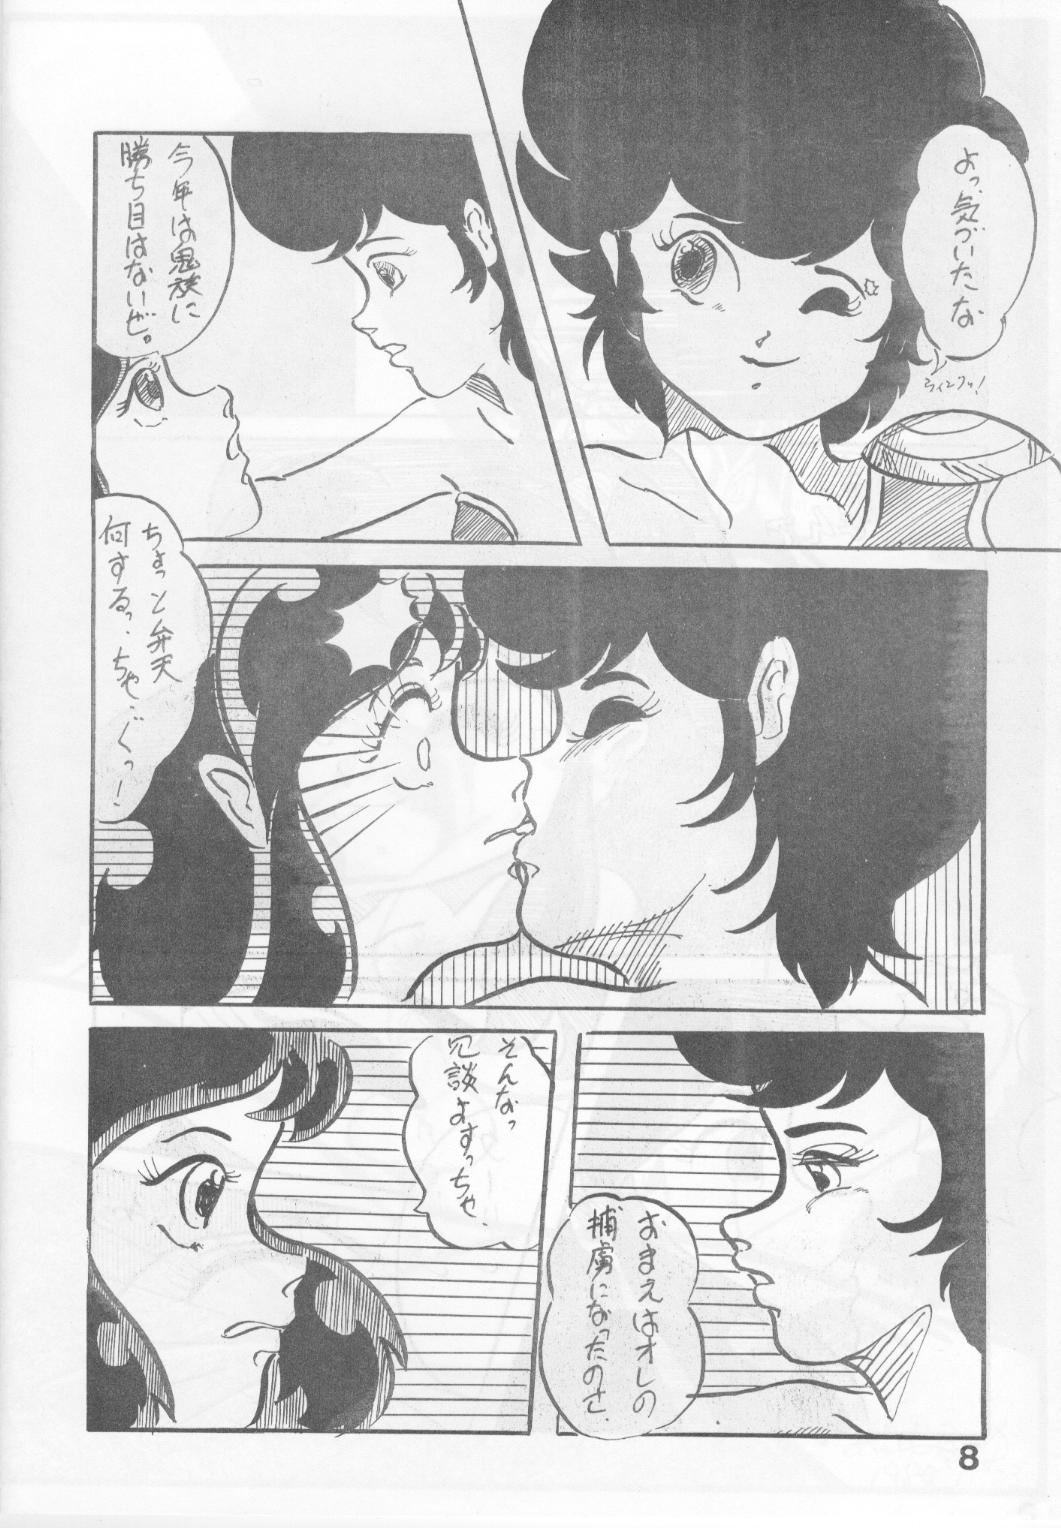 [Molten Club] Sexy Shot Vol. 2 (Urusei Yatsura) [モルテンクラブ] SEXY SHOT VOL.2 (うる星やつら)